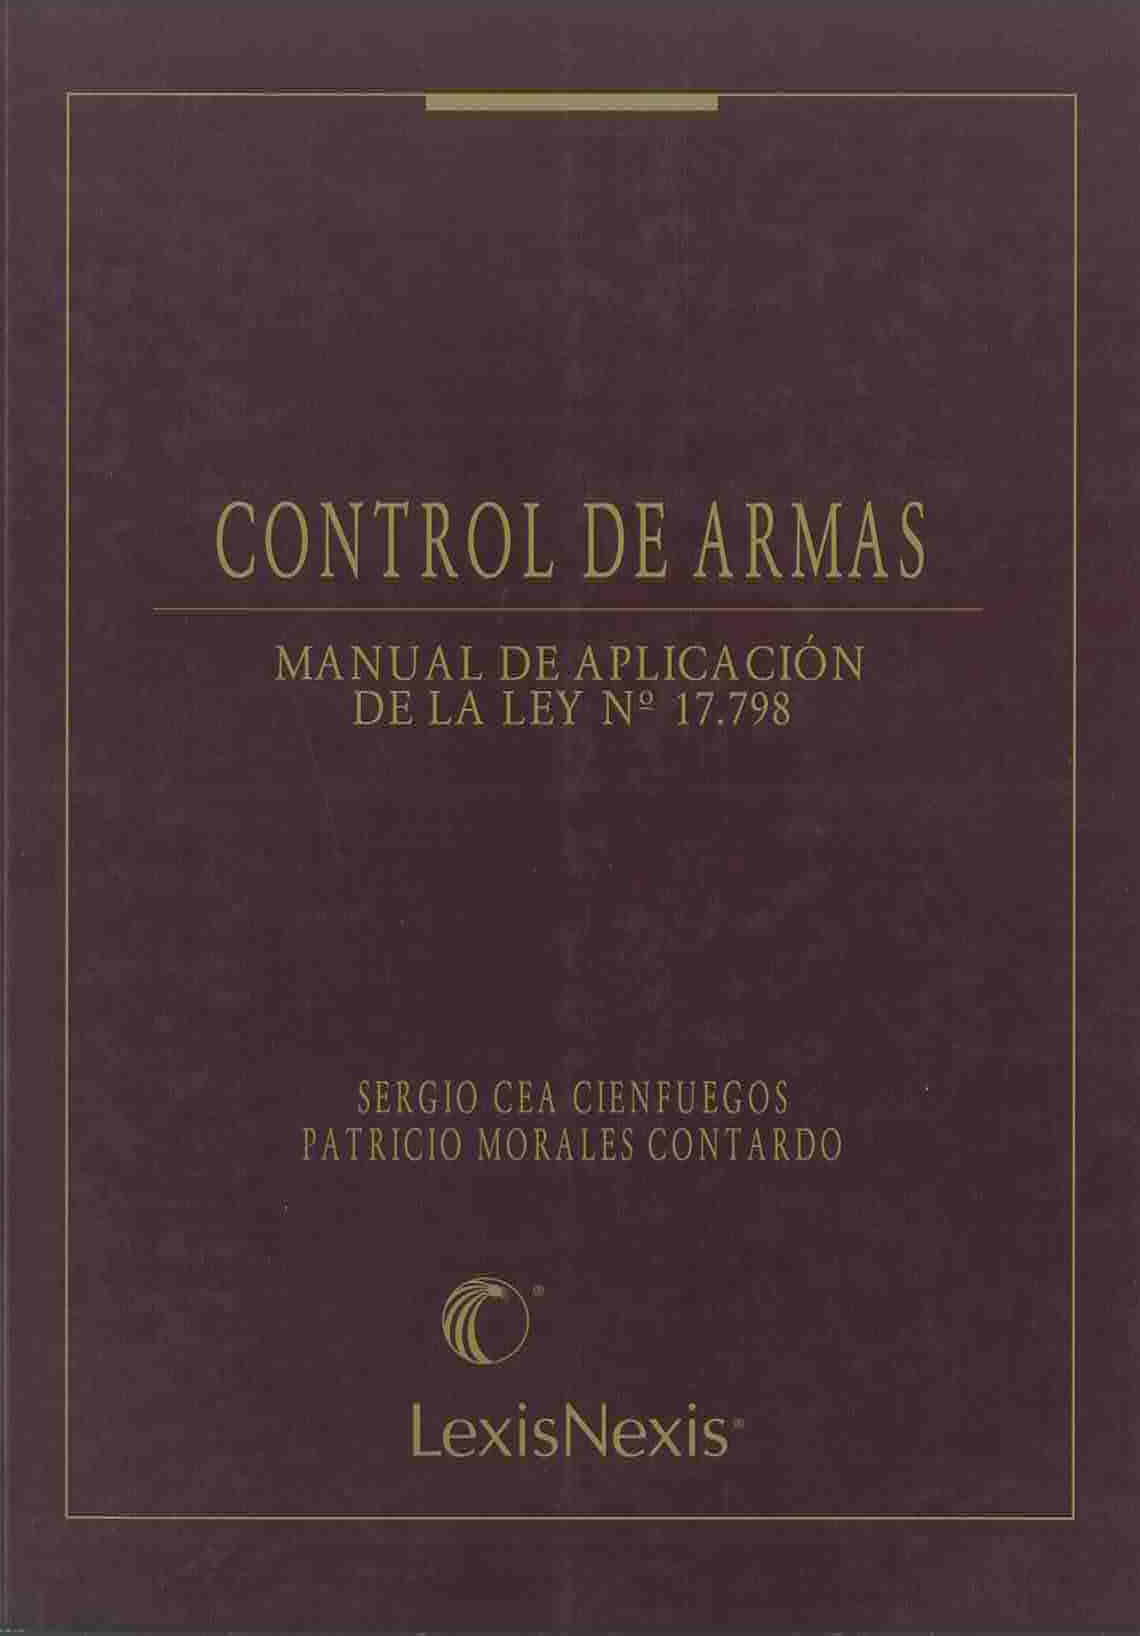 Control de armas.  Manual de aplicación de la ley N°17.798